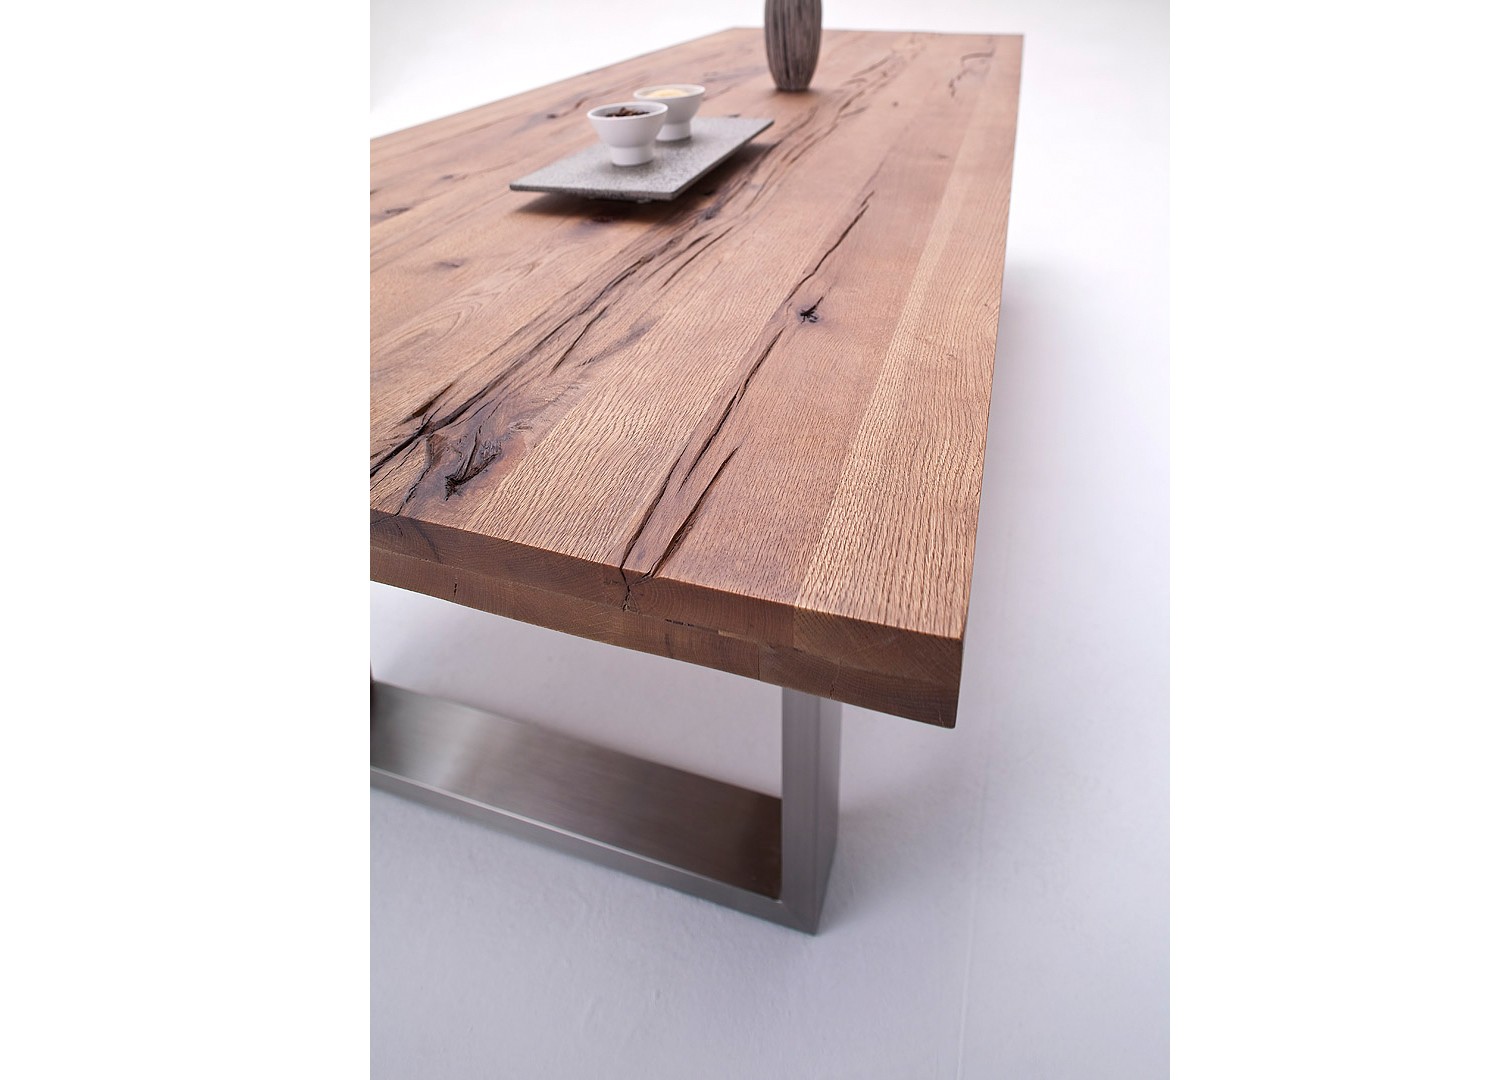 Table à manger bois et métal